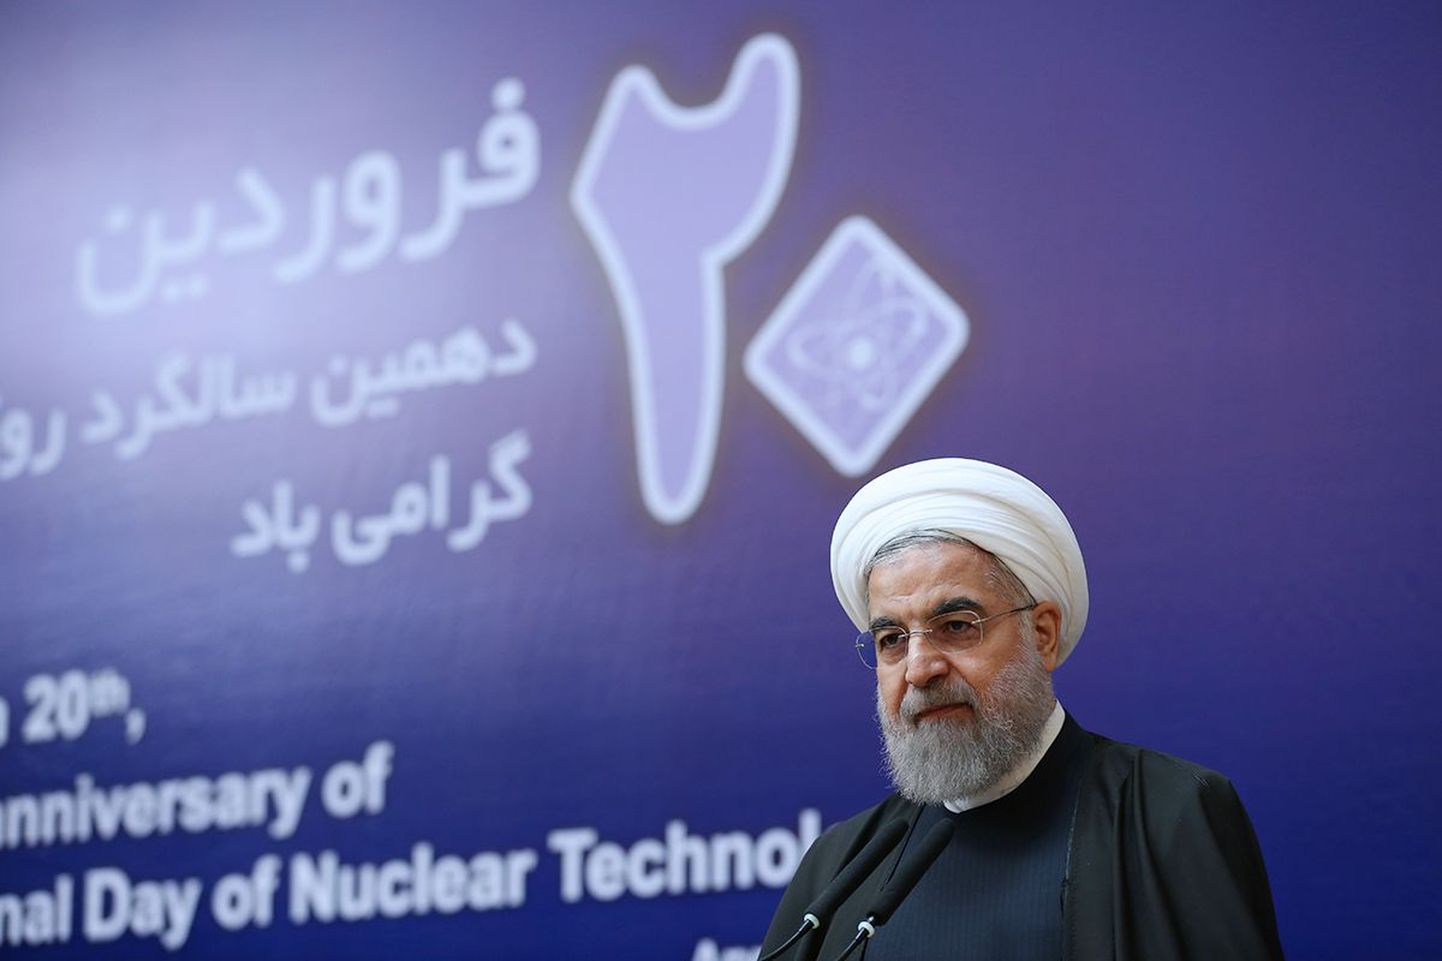 Iraani president Hassan Rouhani